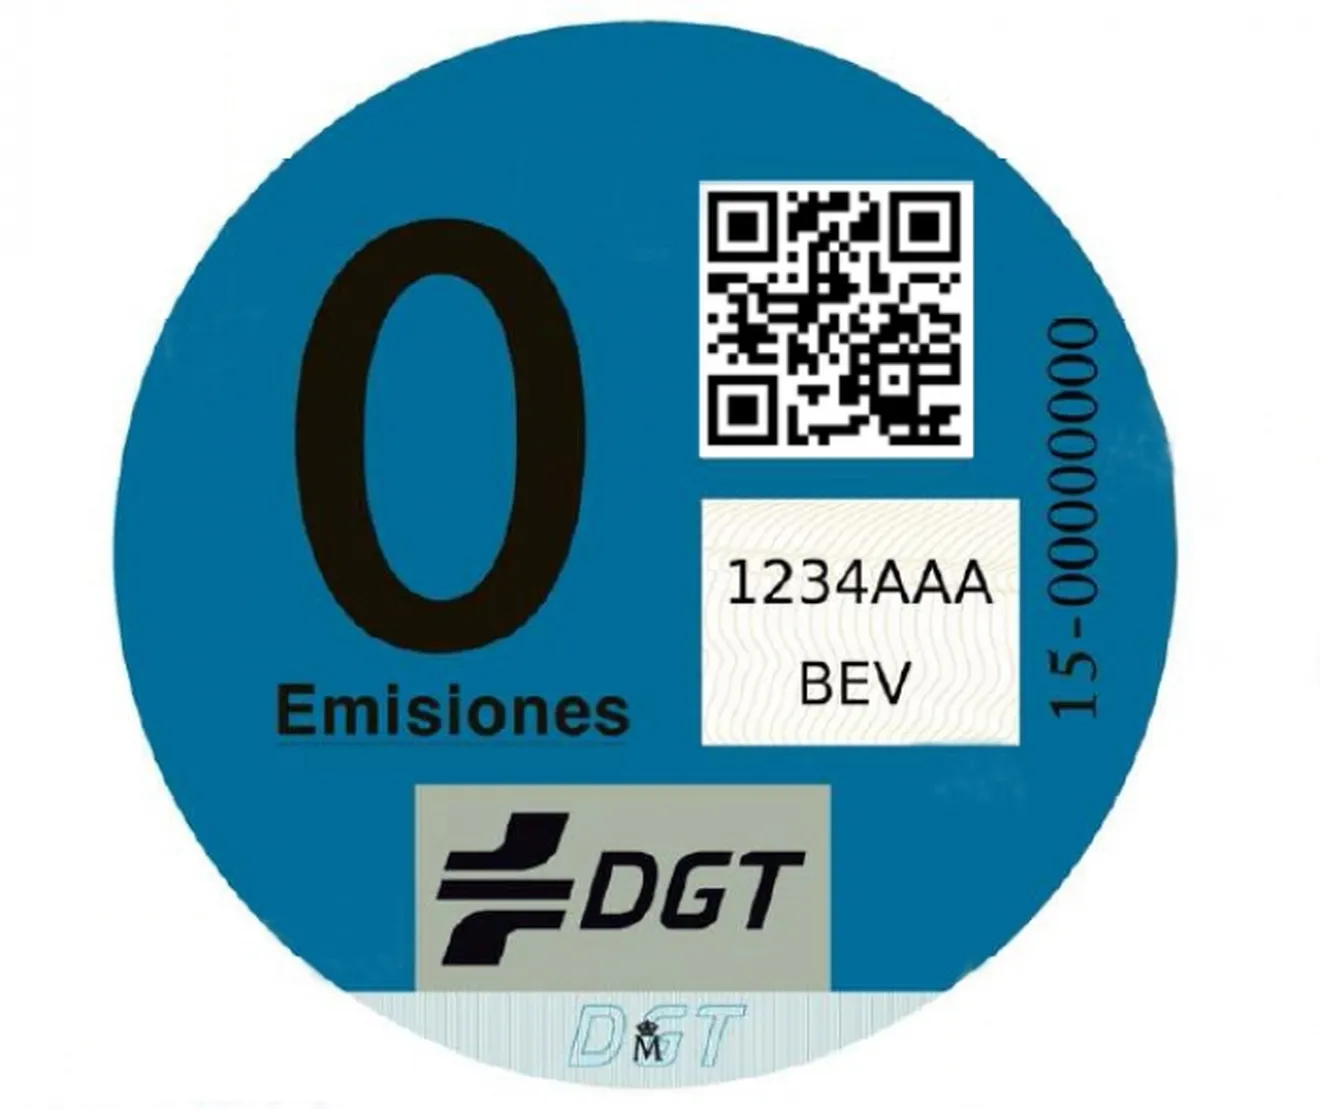 Este es el nuevo "Distintivo Cero Emisiones" expedido por la DGT